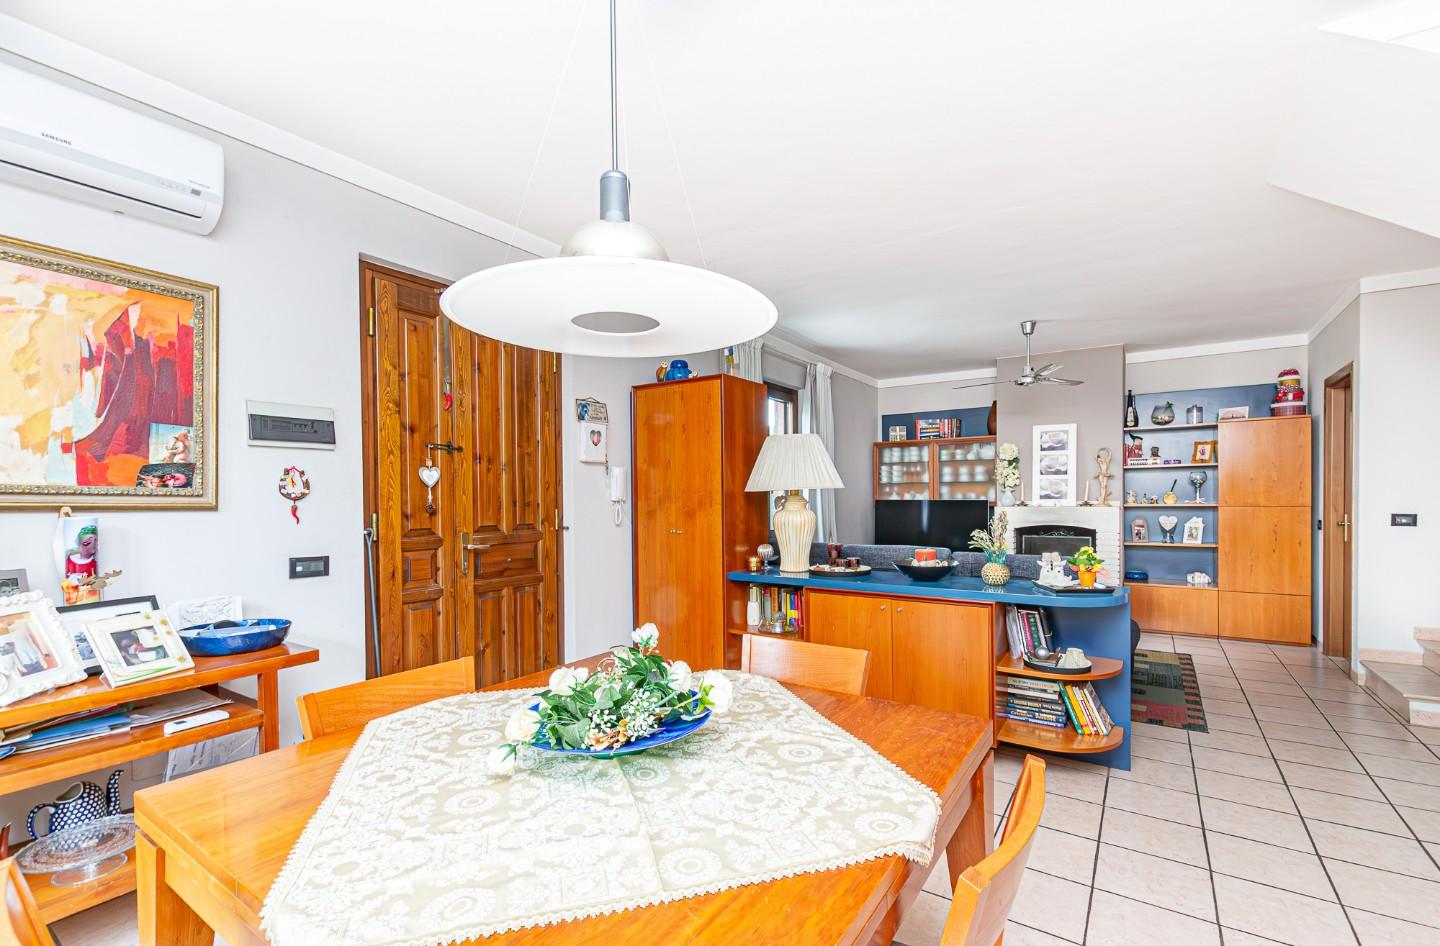 Villetta a schiera angolare in vendita a Ponsacco | Agenzia Toscana Immobiliare